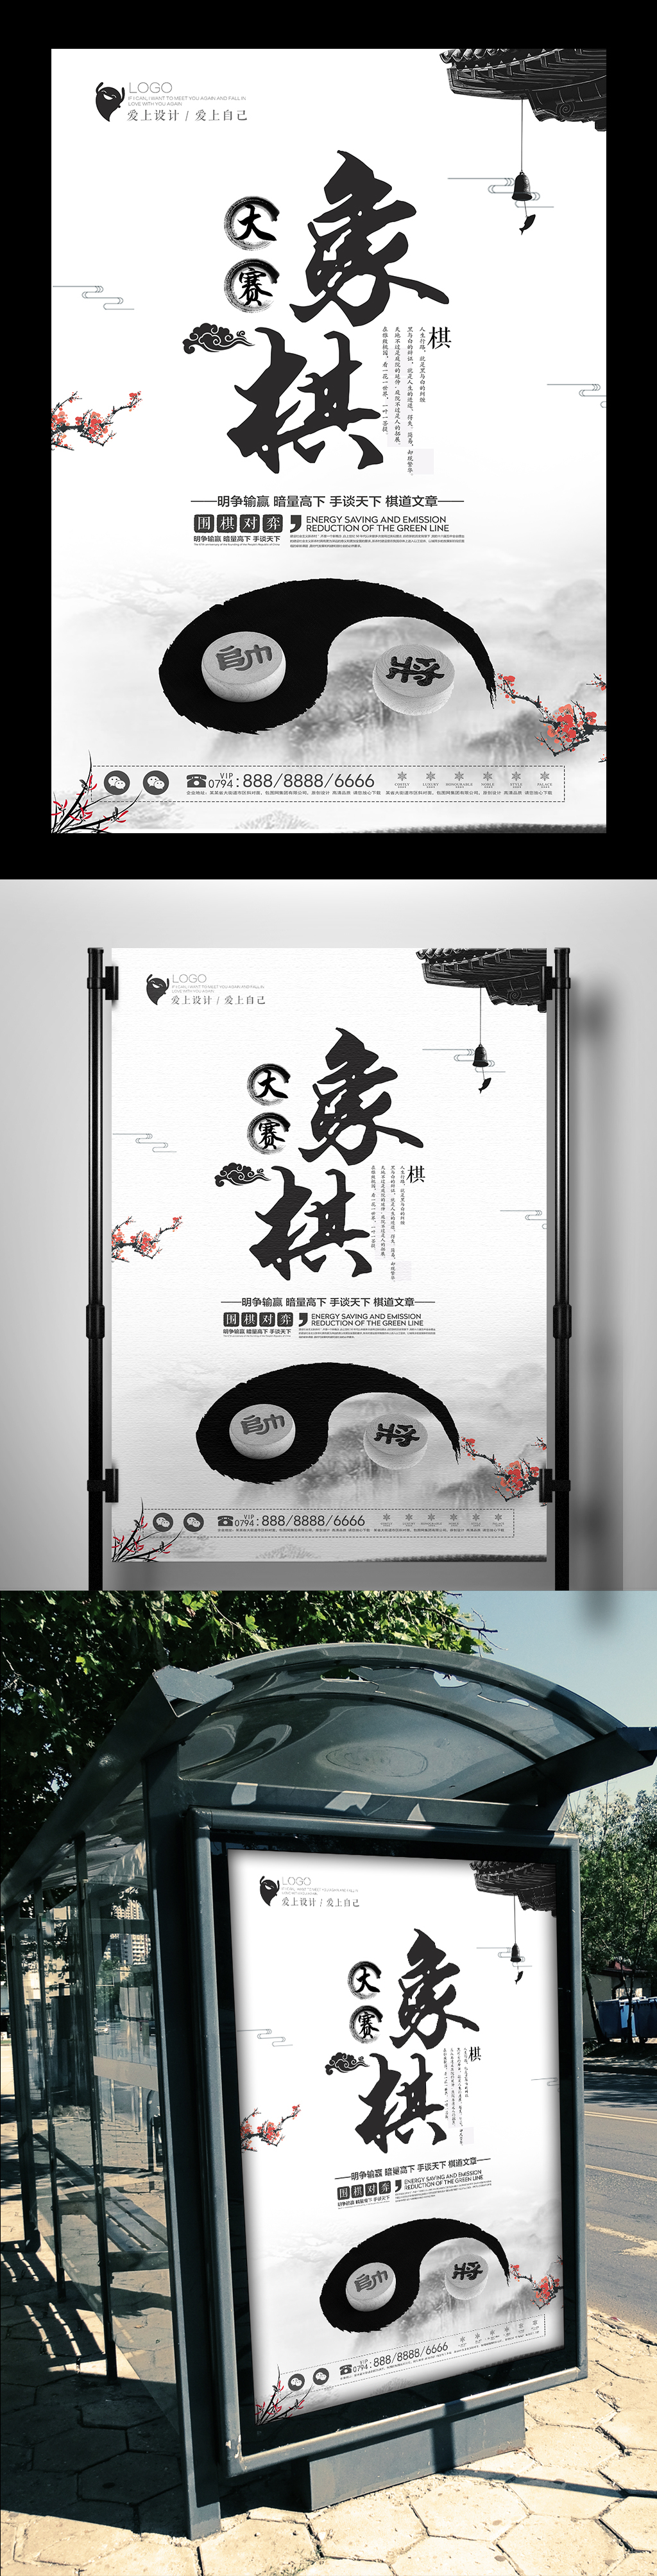 大气水墨中国风象棋比赛海报设计图片